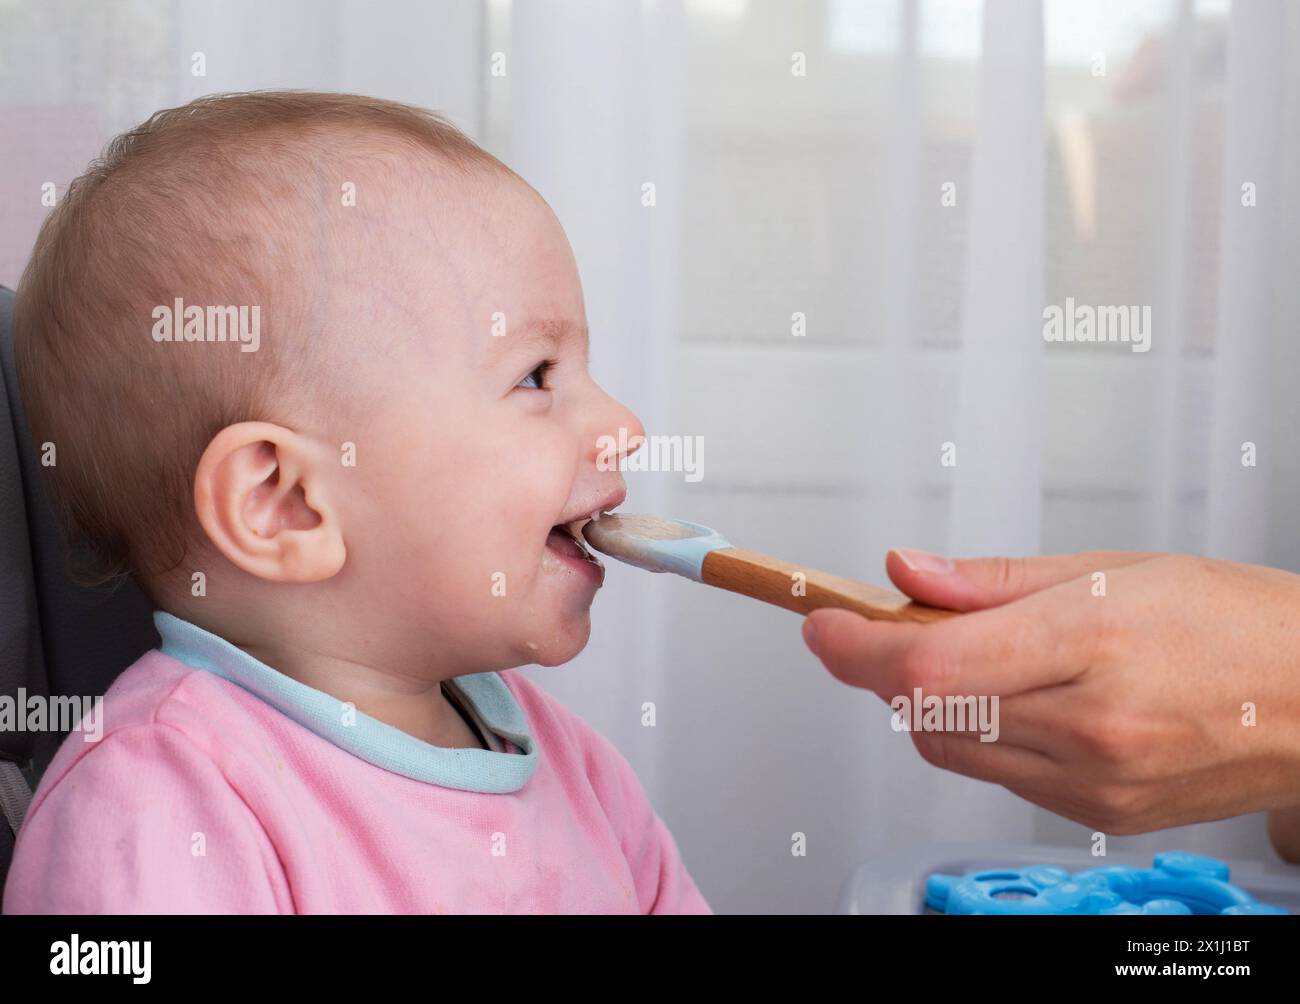 La mano di una madre con un cucchiaio e porridge di grano saraceno nutre un bambino di un anno. Nutrizione dei bambini in tenera età. Alimenti per bambini. Copia Foto Stock